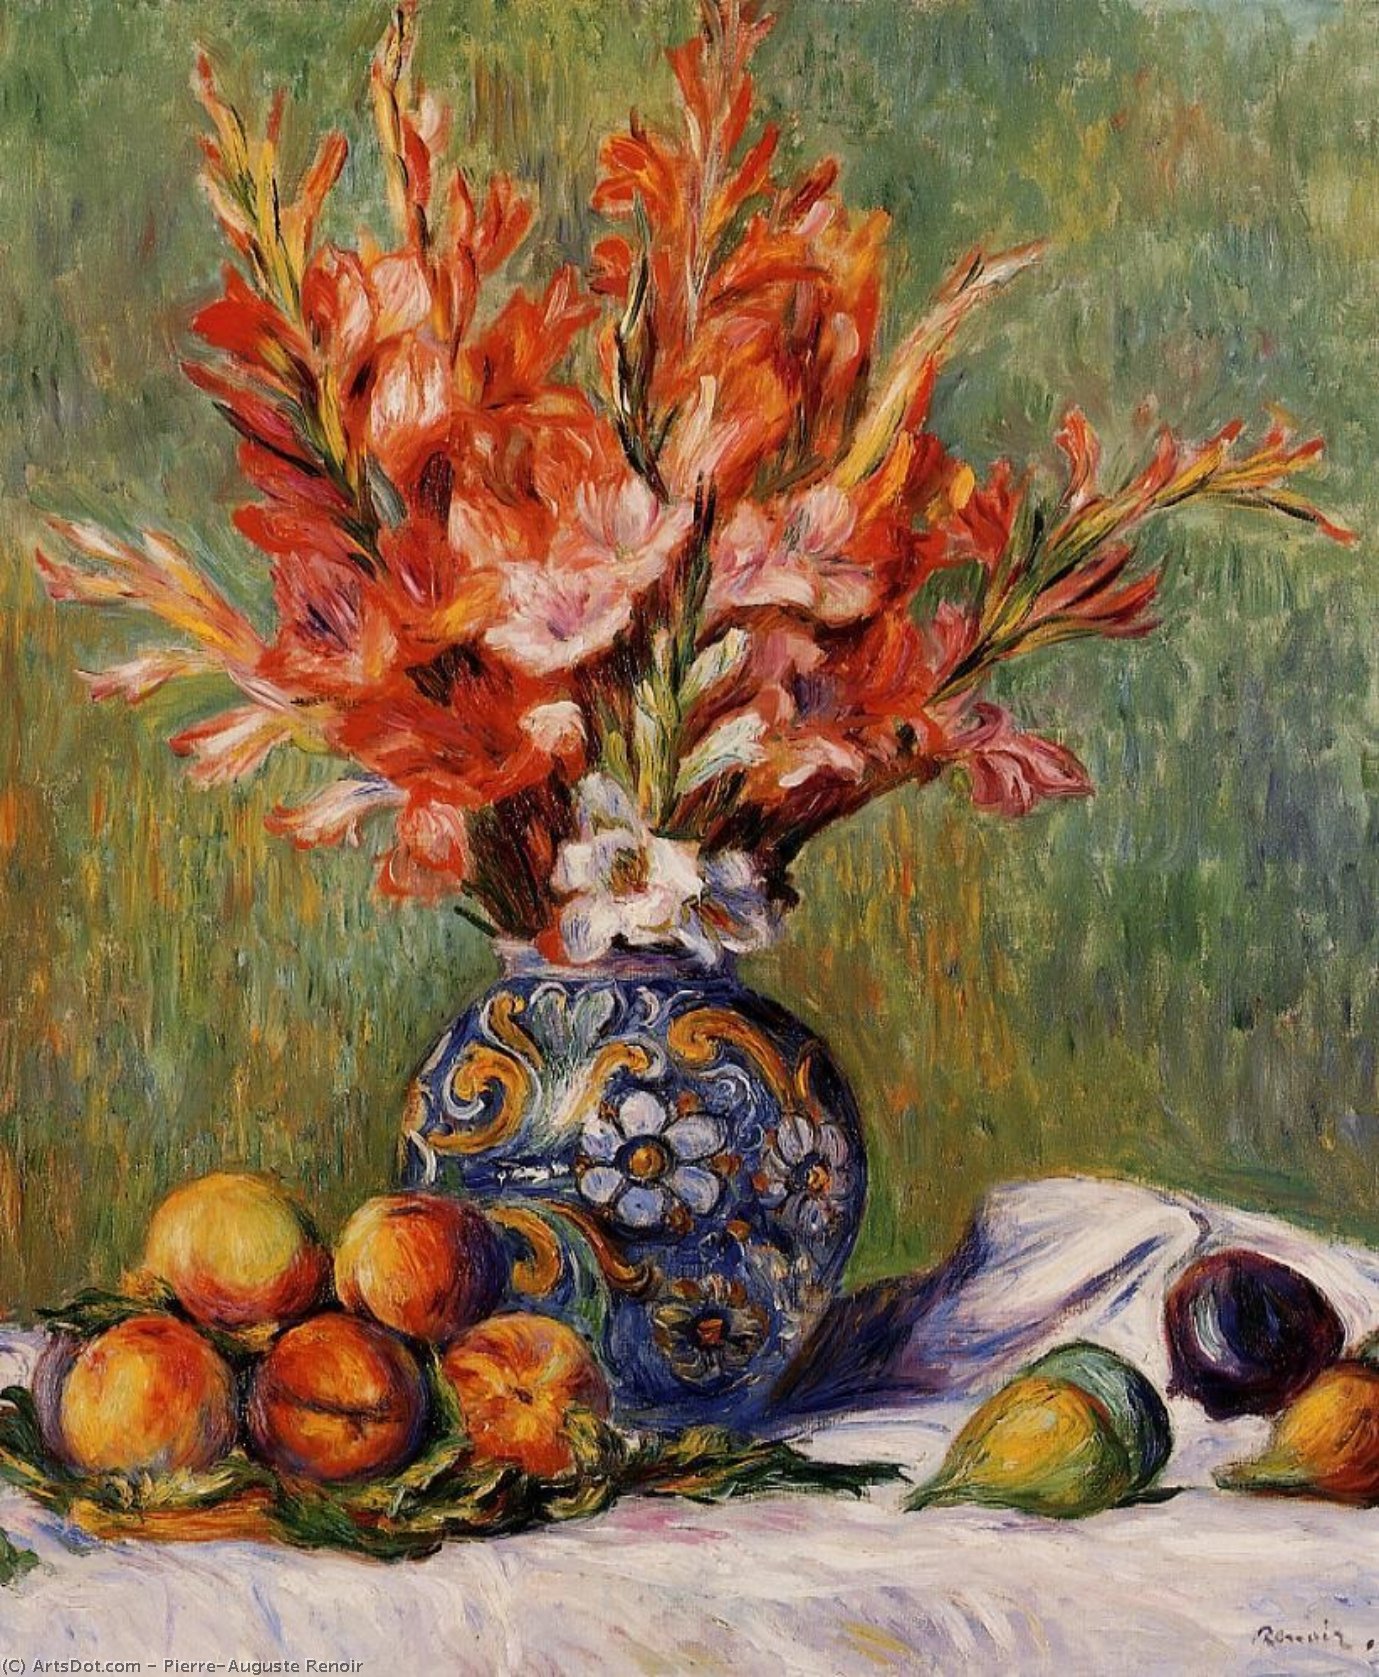 WikiOO.org - אנציקלופדיה לאמנויות יפות - ציור, יצירות אמנות Pierre-Auguste Renoir - Flowers and Fruit